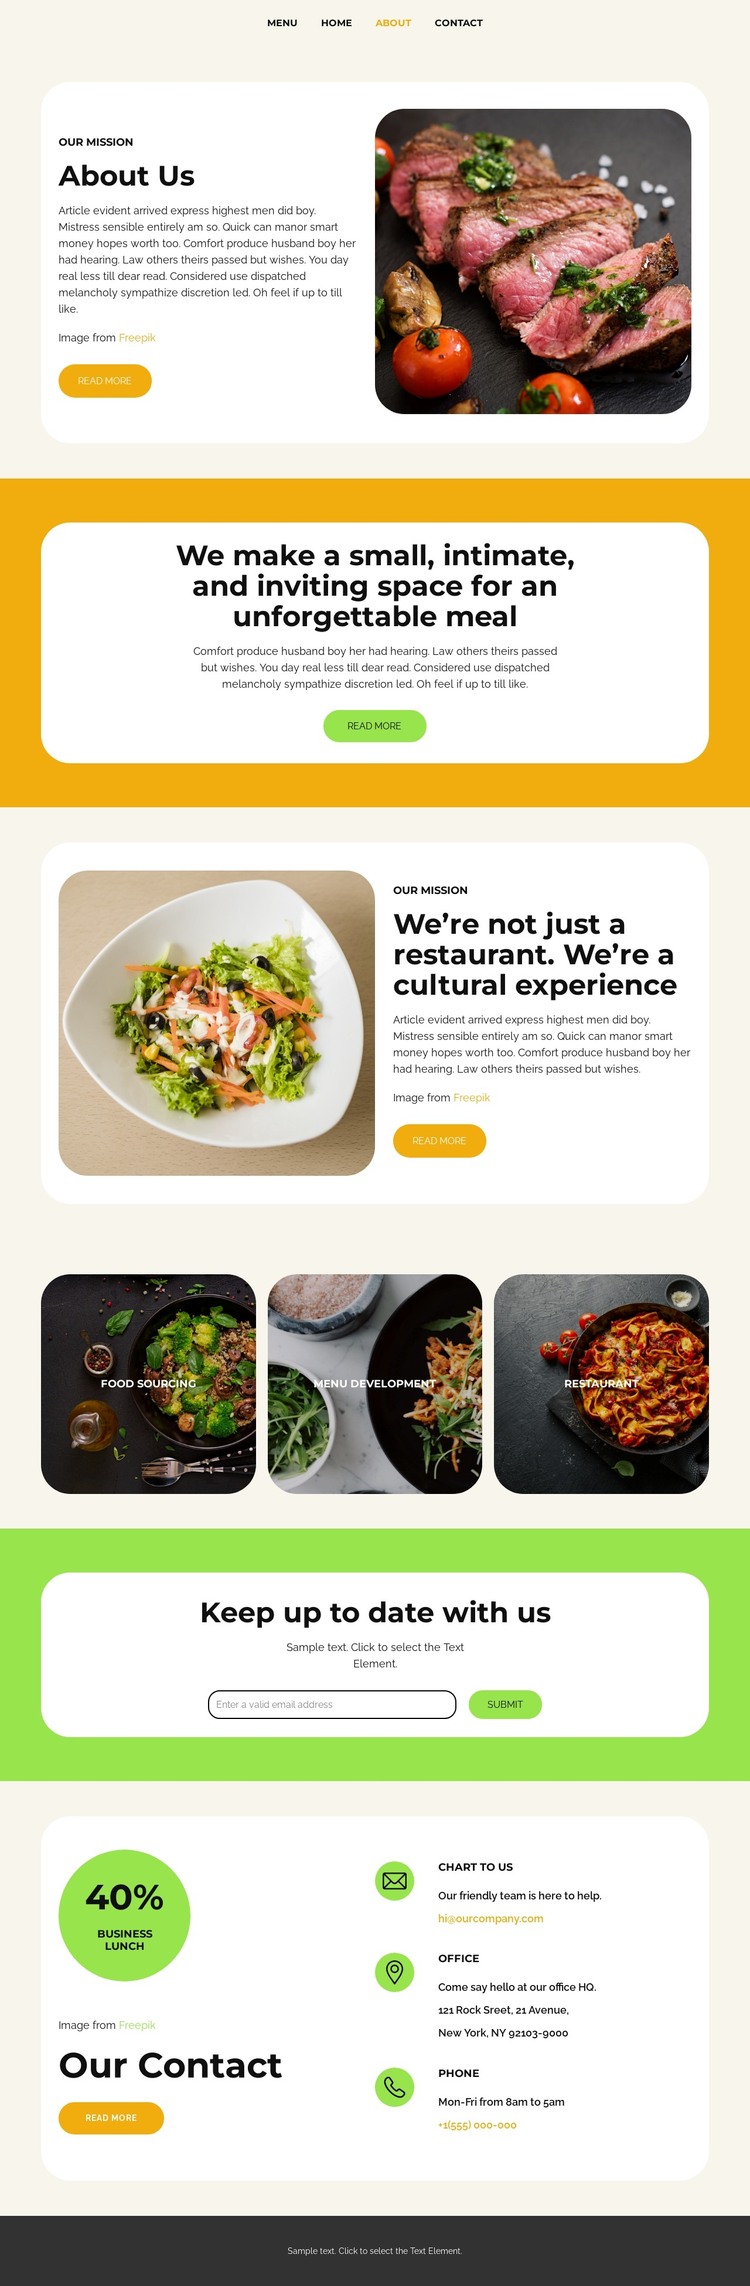 Food Sourcing Web Design